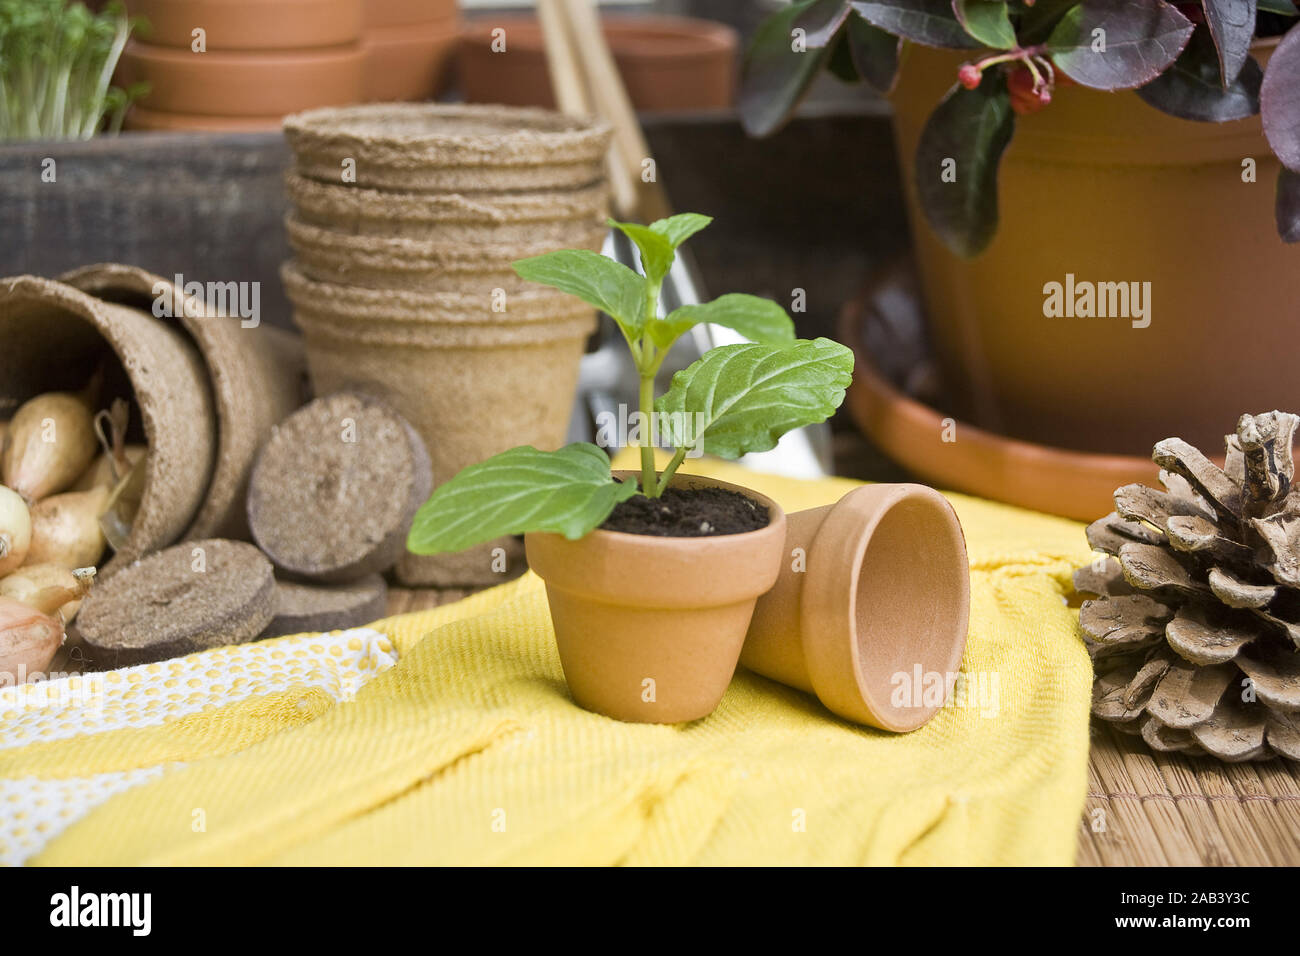 Setzling in einem Blumentopf mit Handschuhe |Pianta in un vaso con guanti| Foto Stock